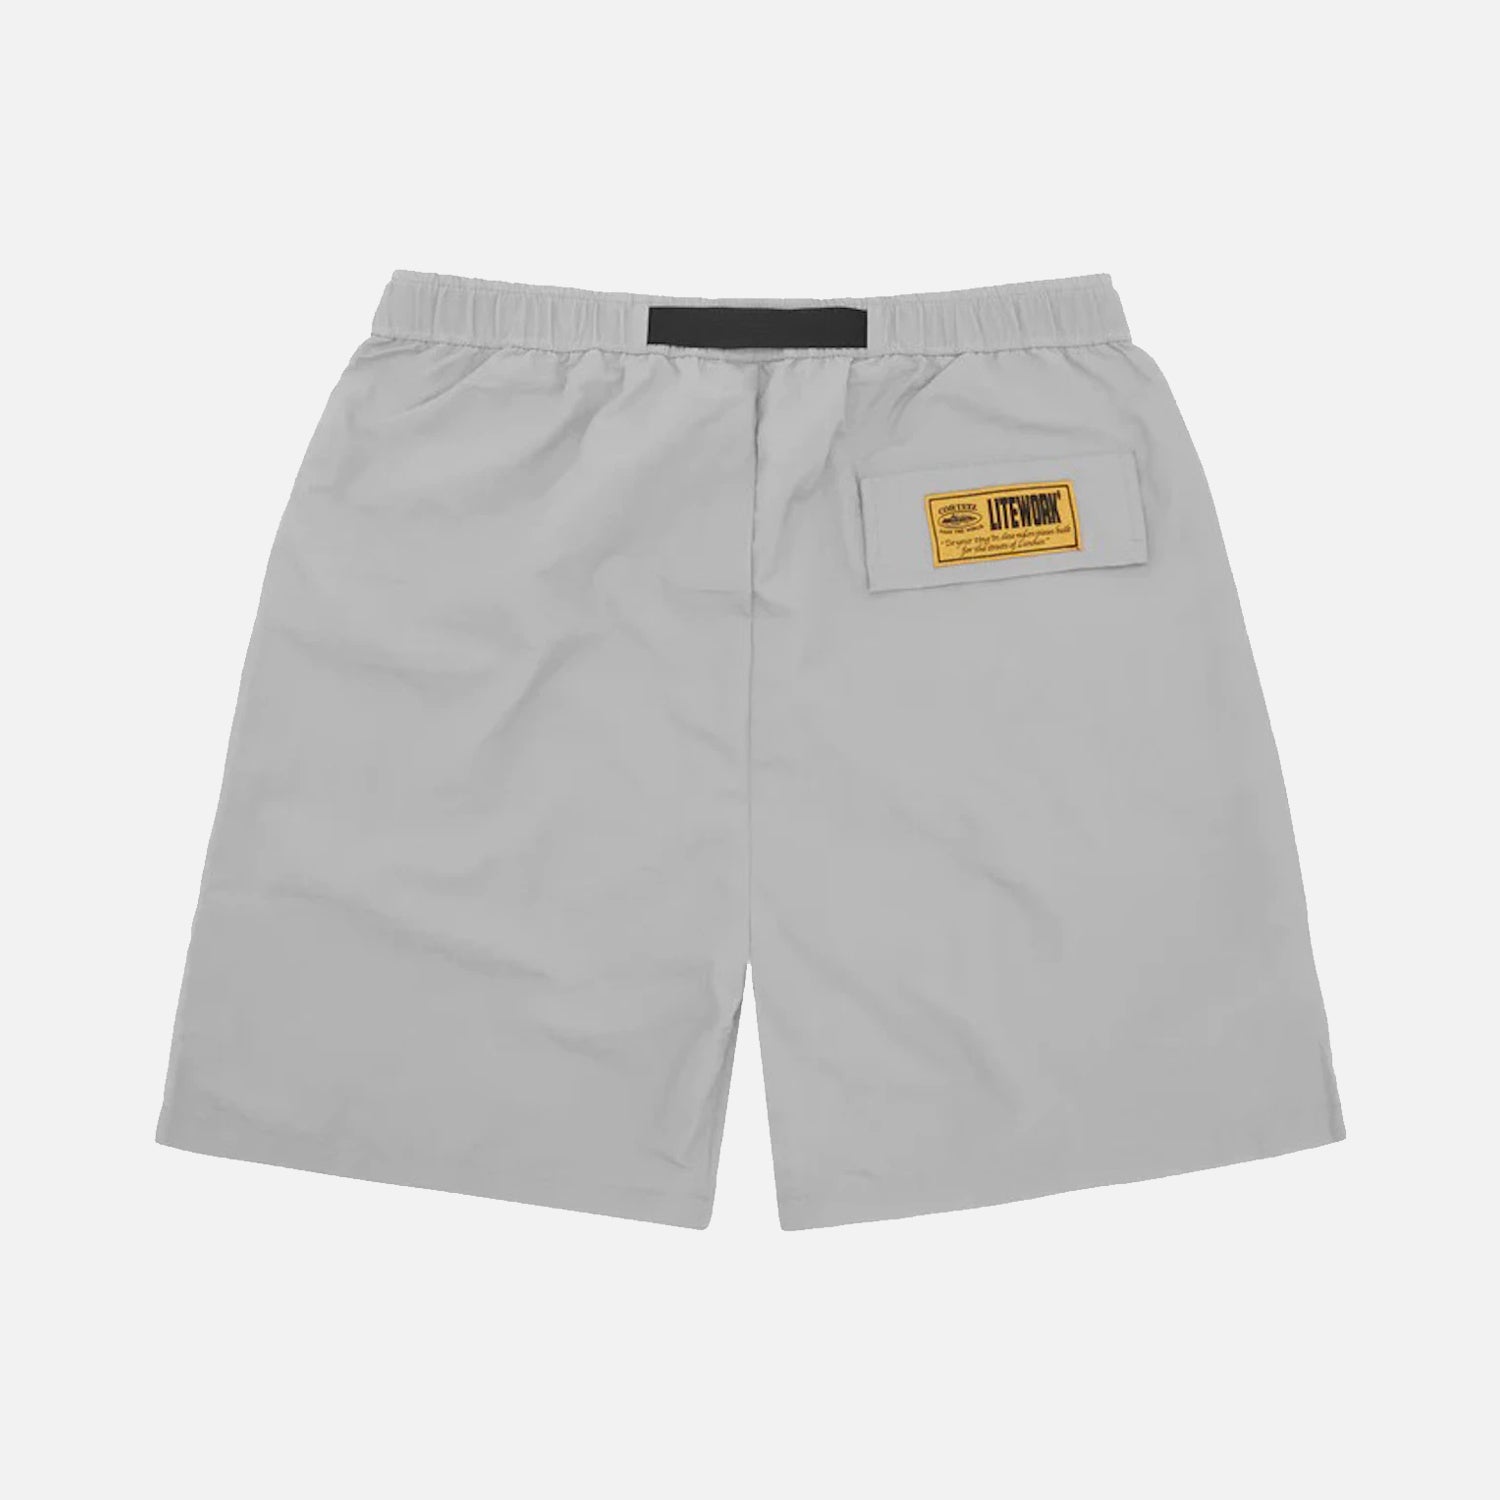 Corteiz RTW Crtz Nylon Shorts - Grey / White